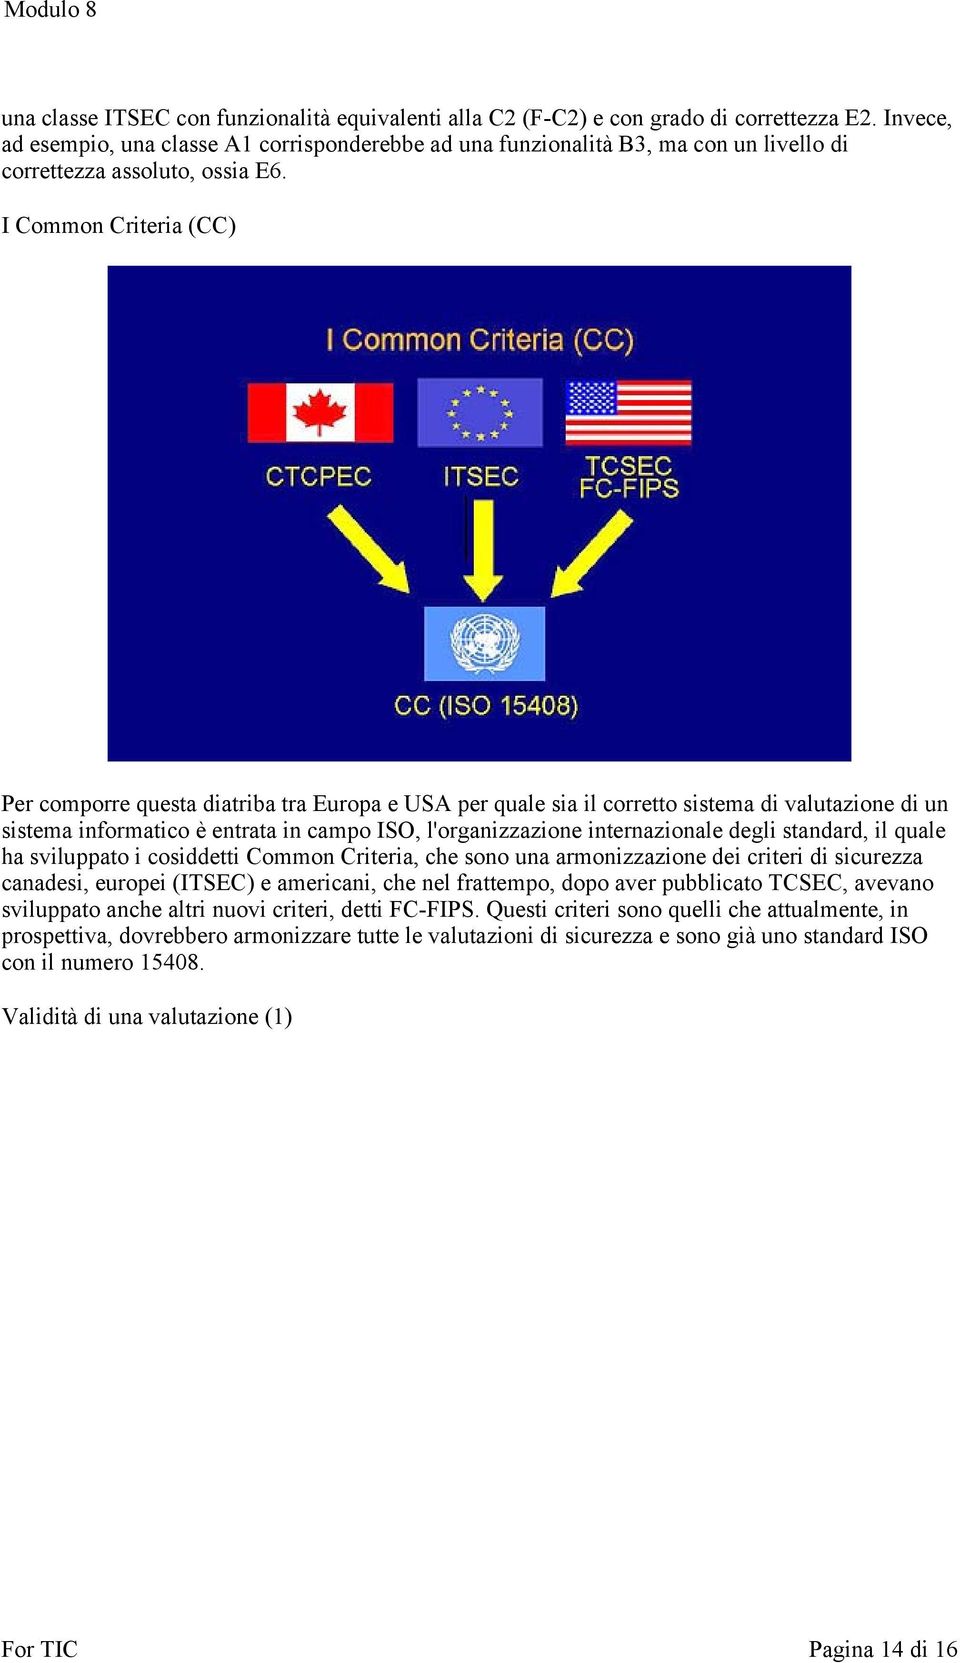 I Common Criteria (CC) Per comporre questa diatriba tra Europa e USA per quale sia il corretto sistema di valutazione di un sistema informatico è entrata in campo ISO, l'organizzazione internazionale